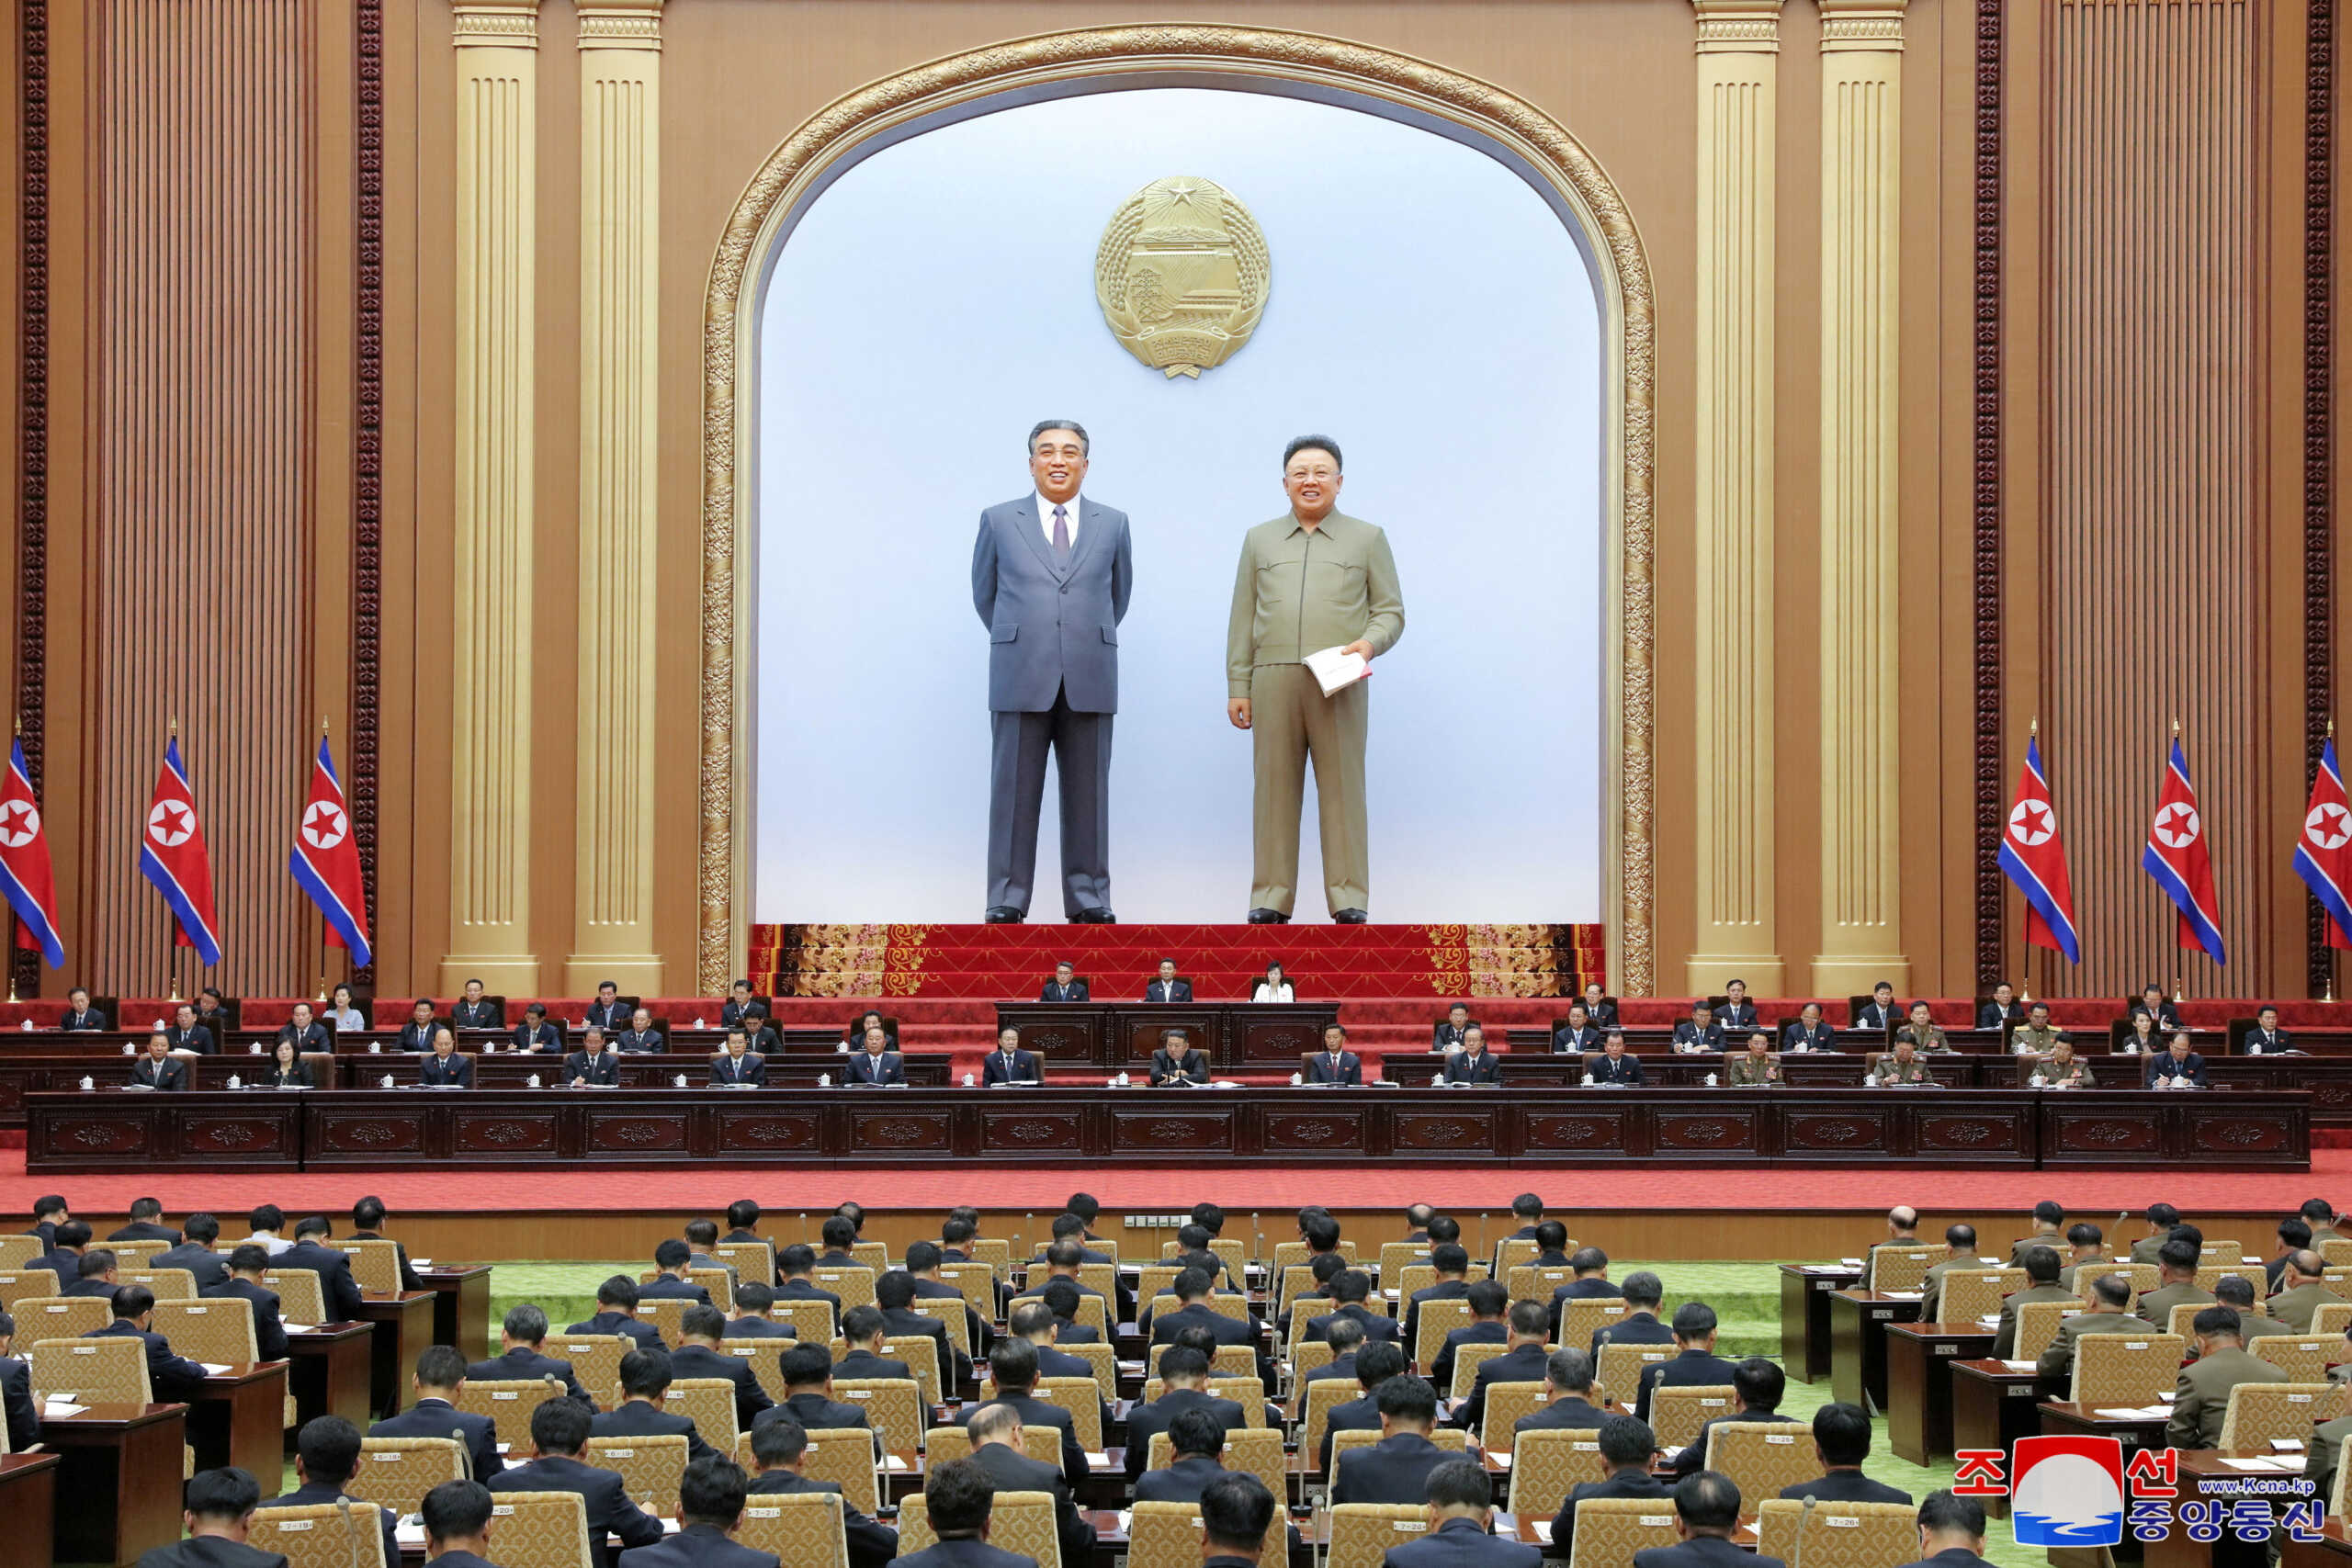 Η Βόρεια Κορέα έβαλε στο Σύνταγμά της ότι είναι «πυρηνική δύναμη»